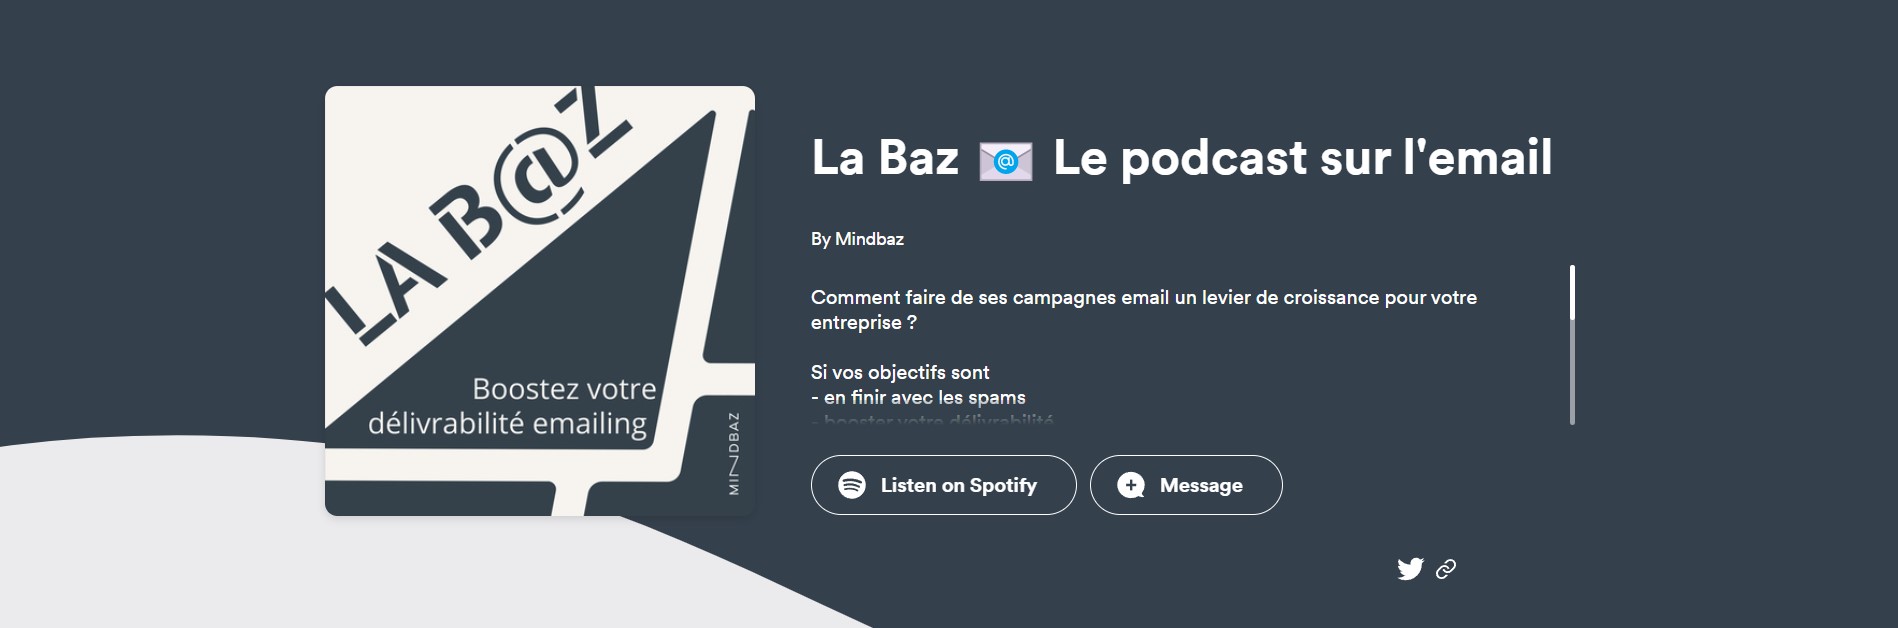 la baz podcast email sms conseils par mindbaz